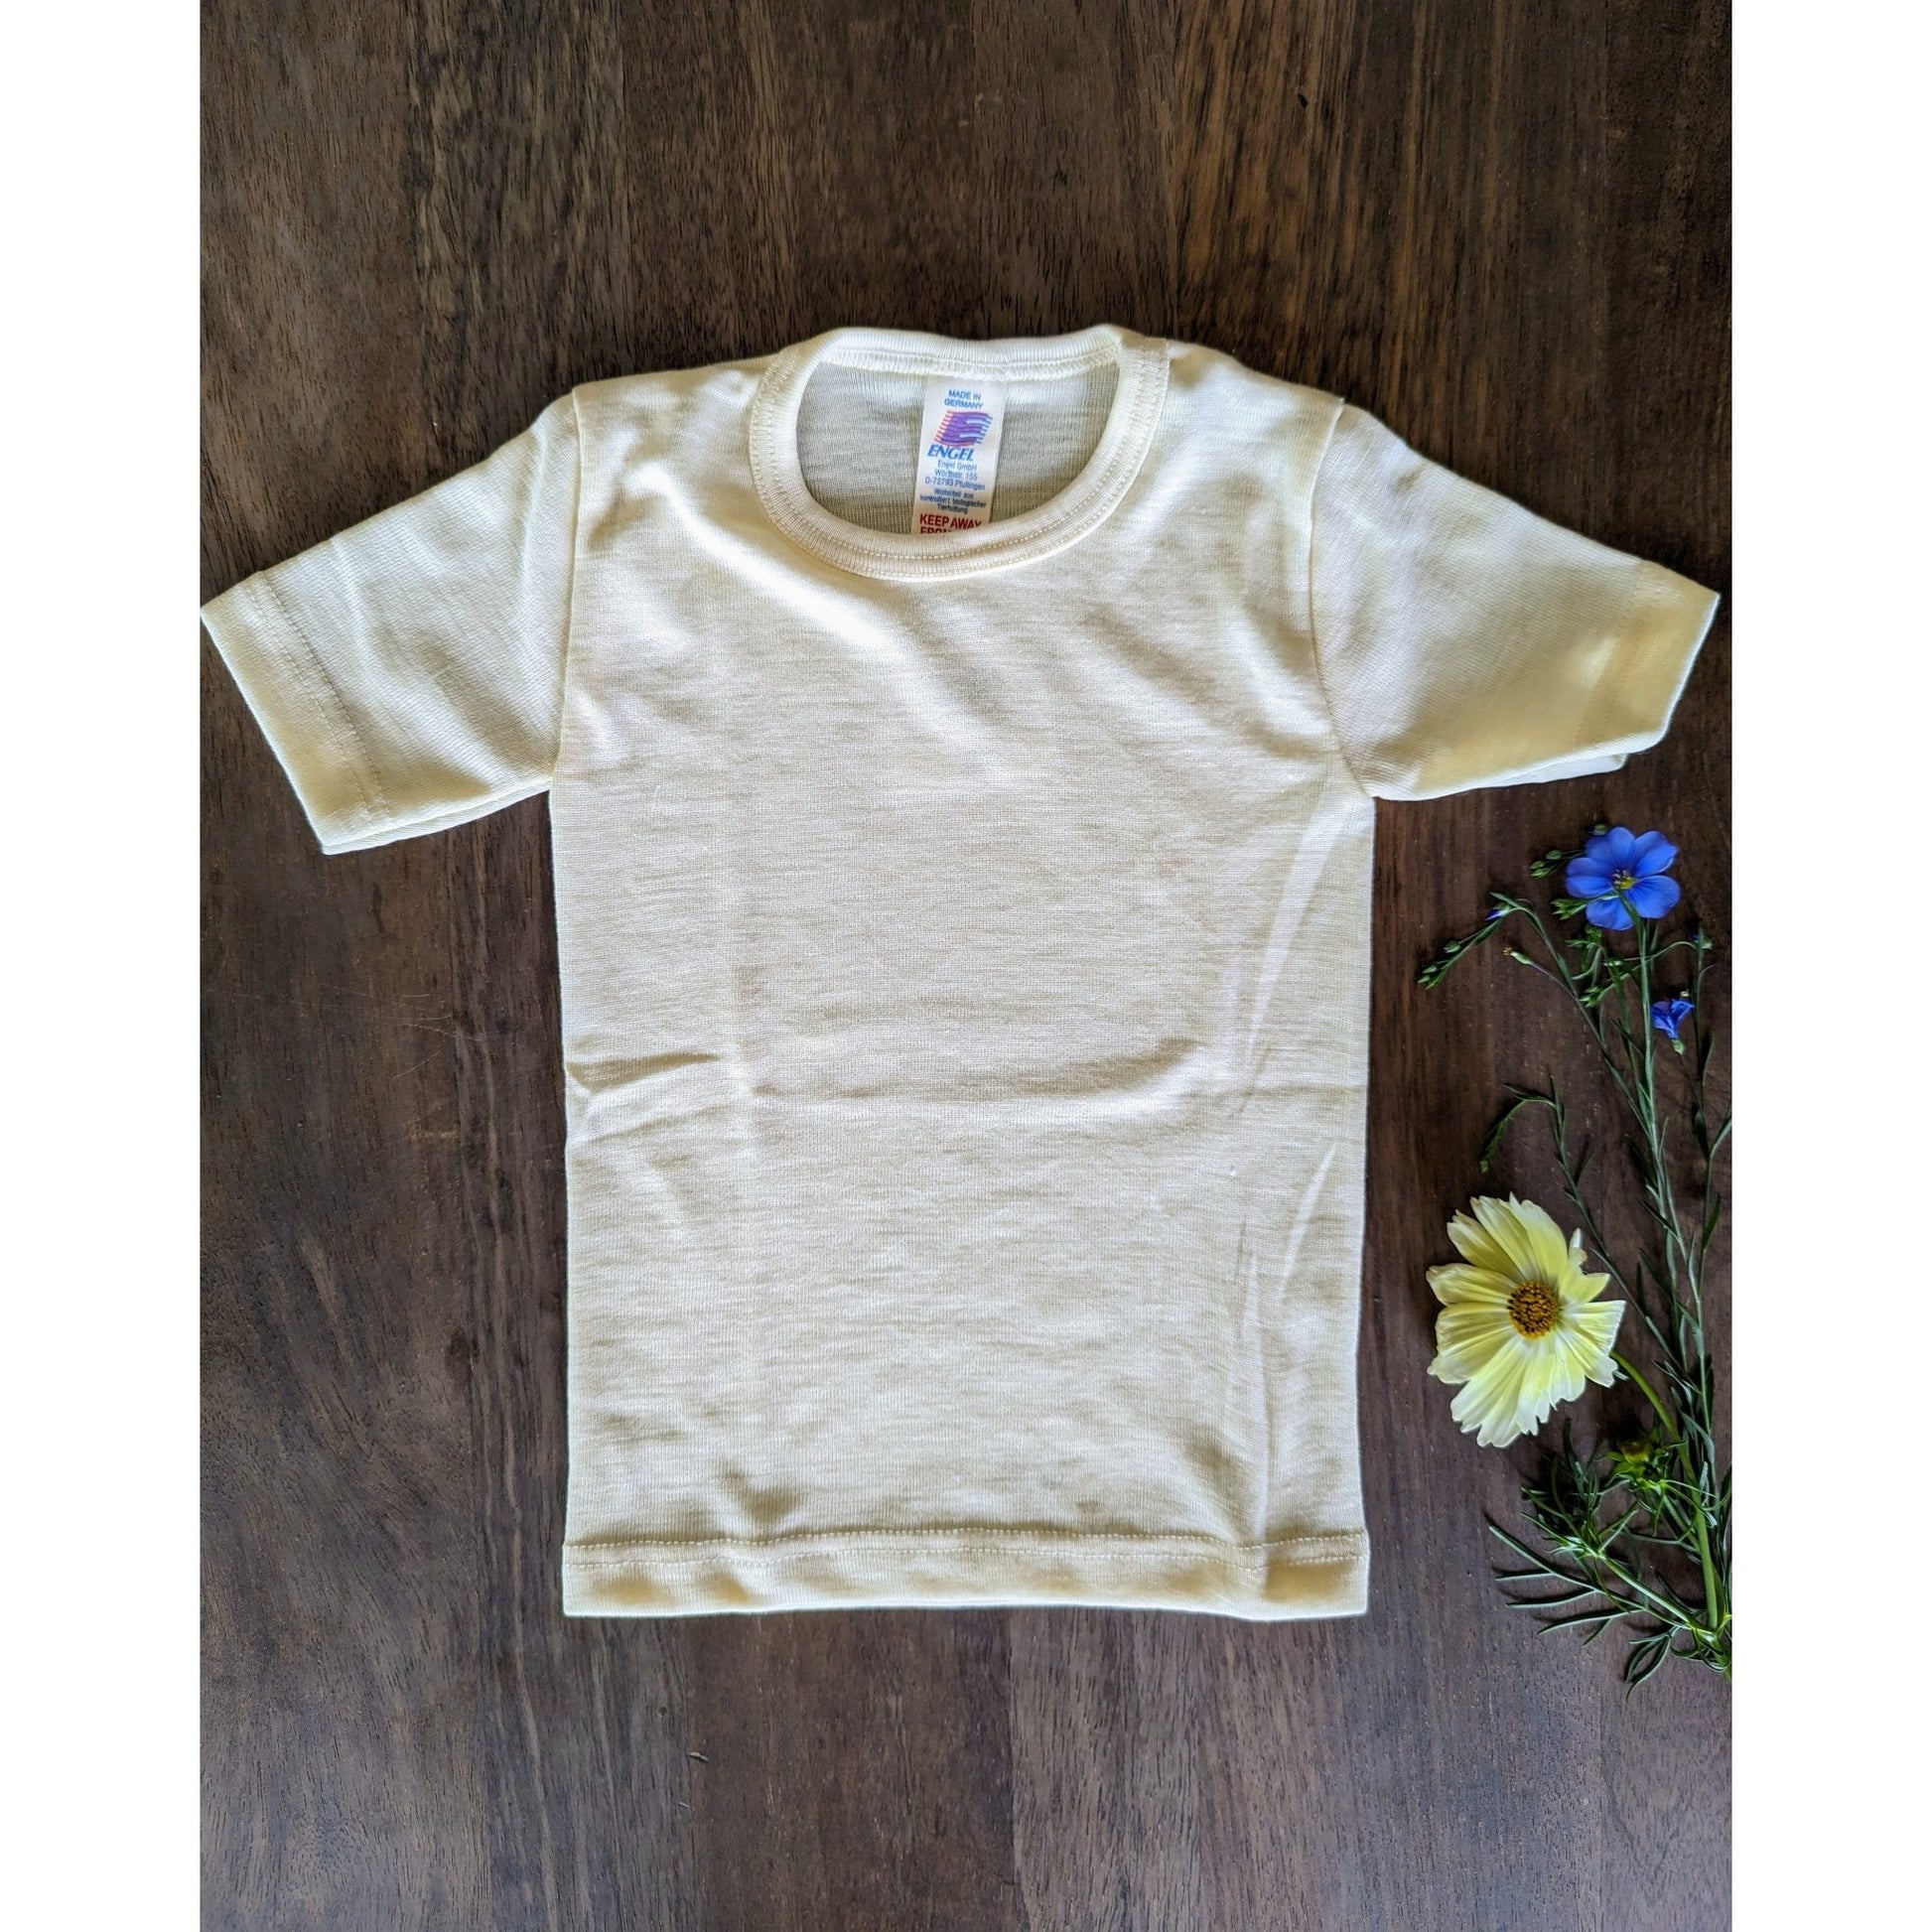 Engel - Organic Merino Wool Silk T-Shirt for Kids - Nature's Wild Child